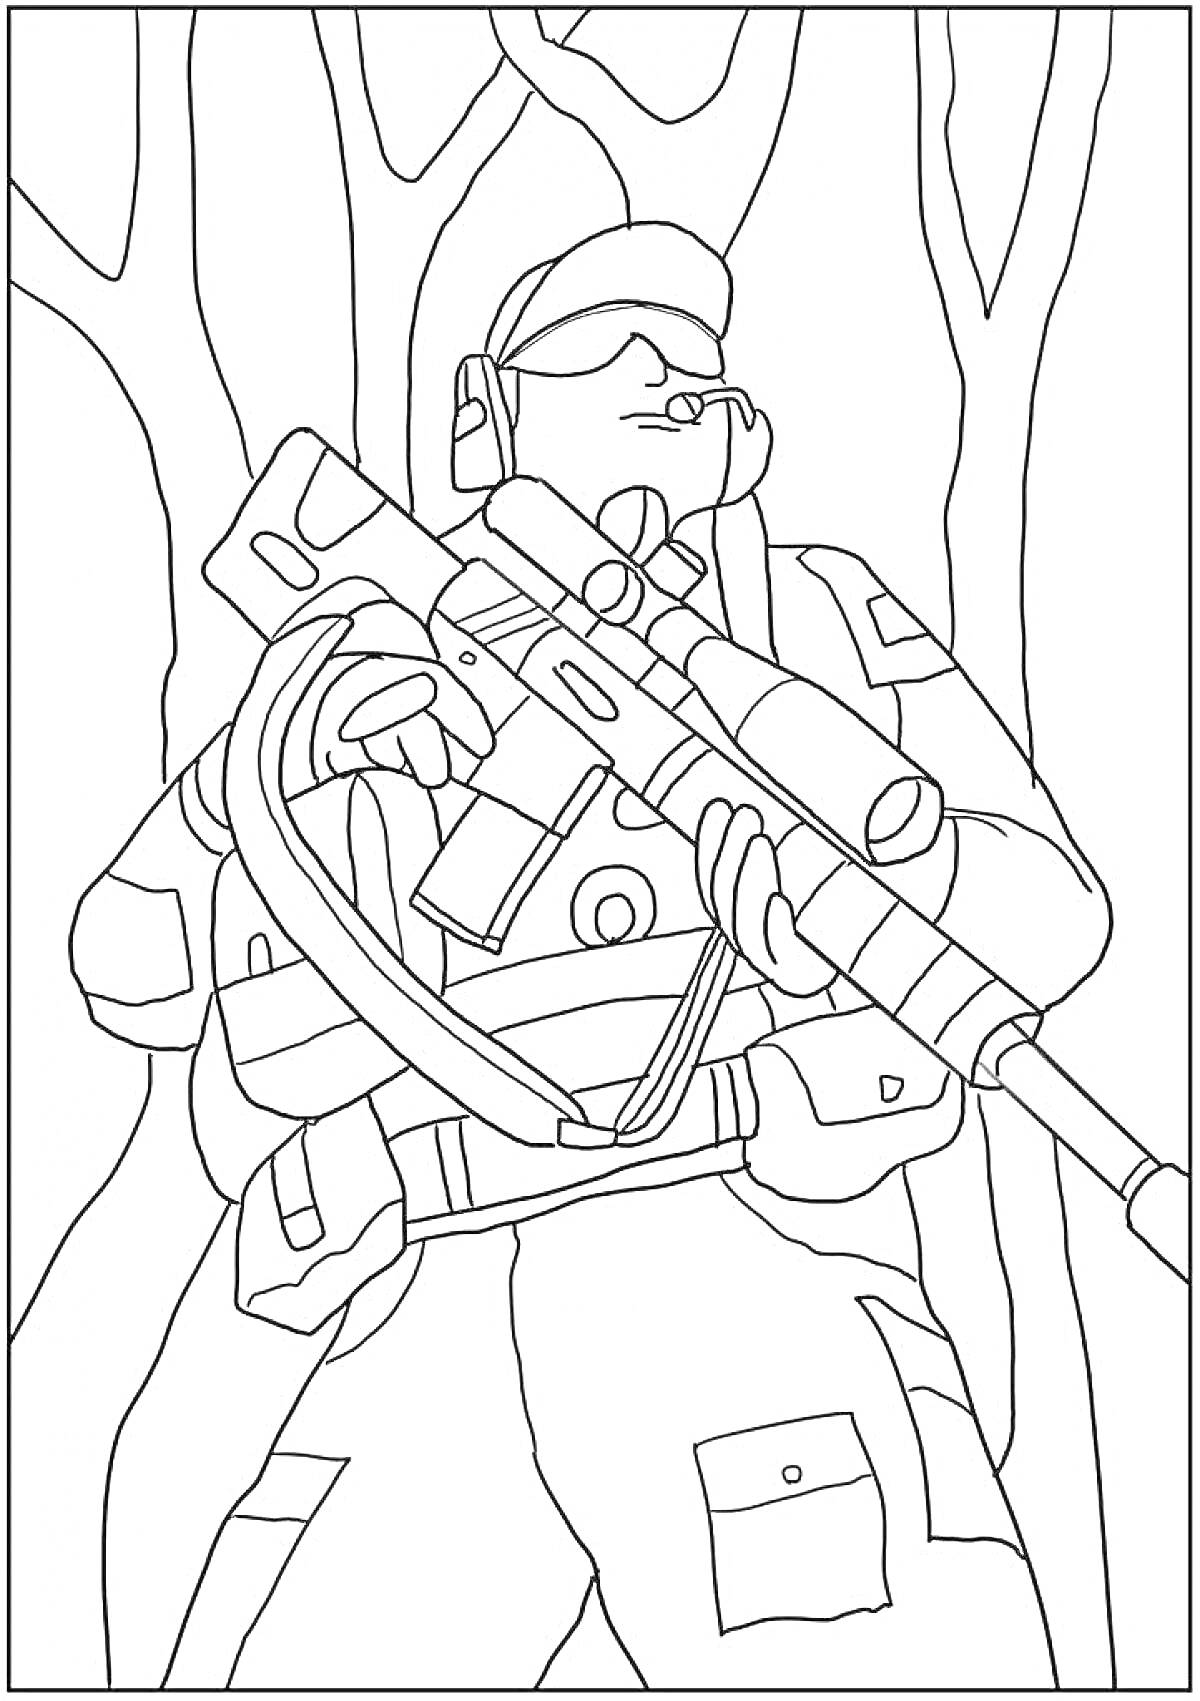 Раскраска Спецназовец в лесу с винтовкой и снаряжением